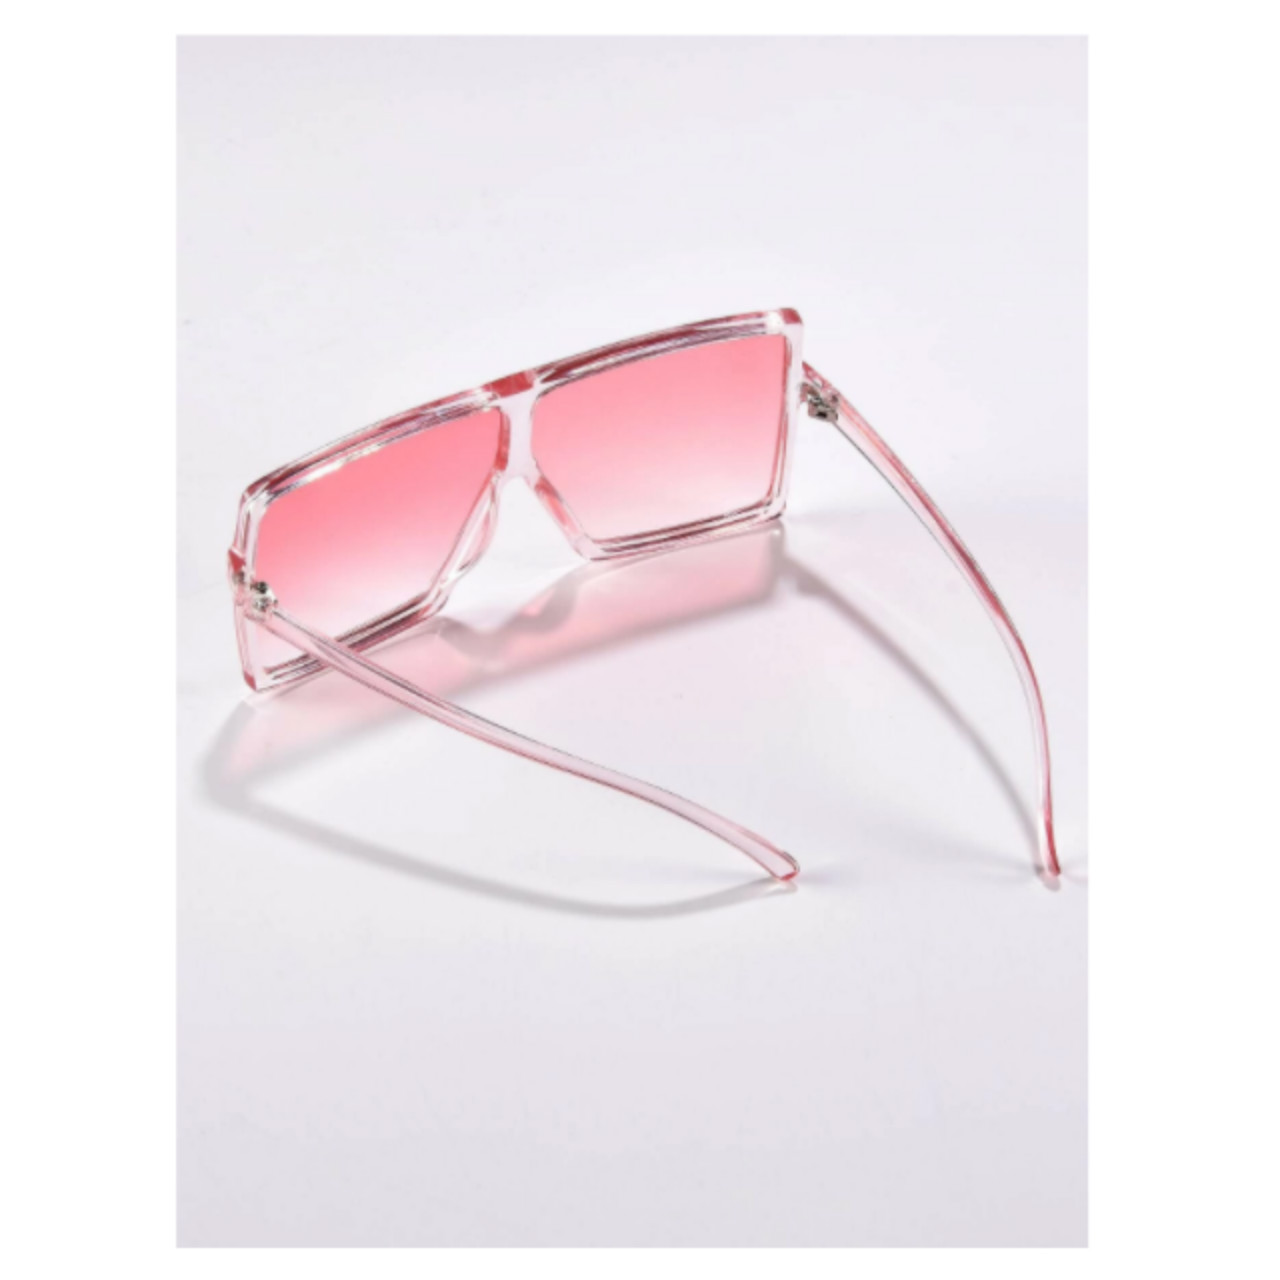 Pink square translucent sunglasses